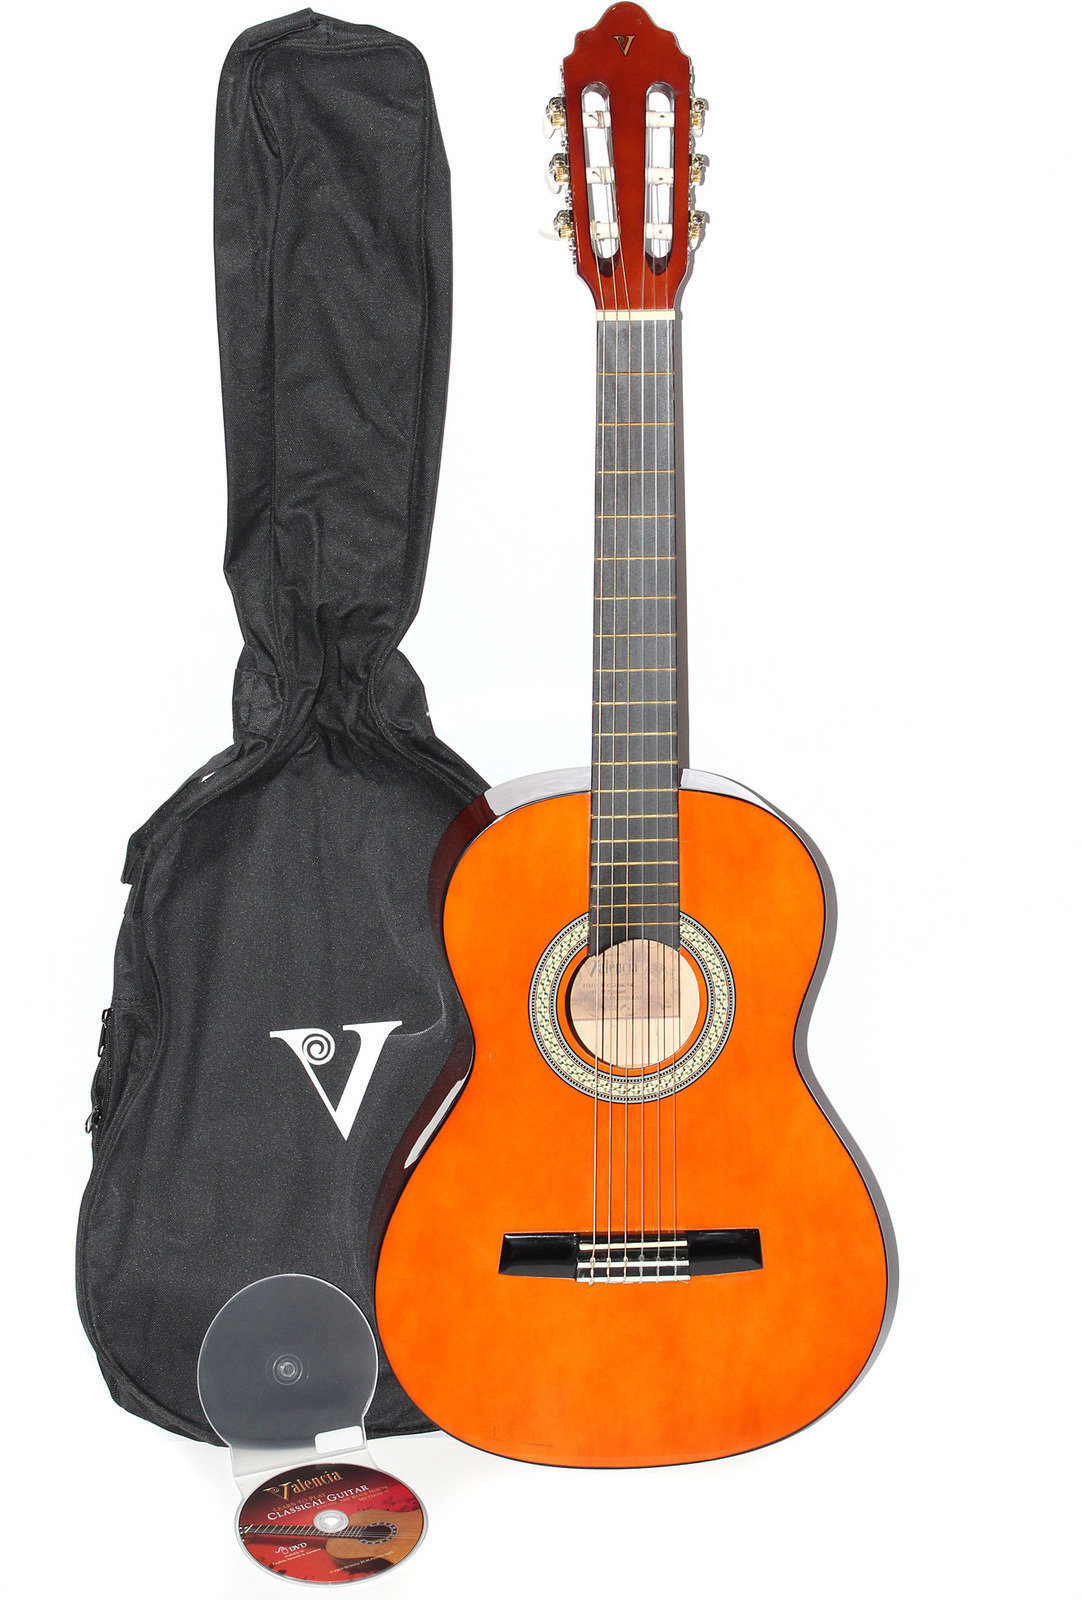 Guitarra clássica Valencia CG 150 K 1/2